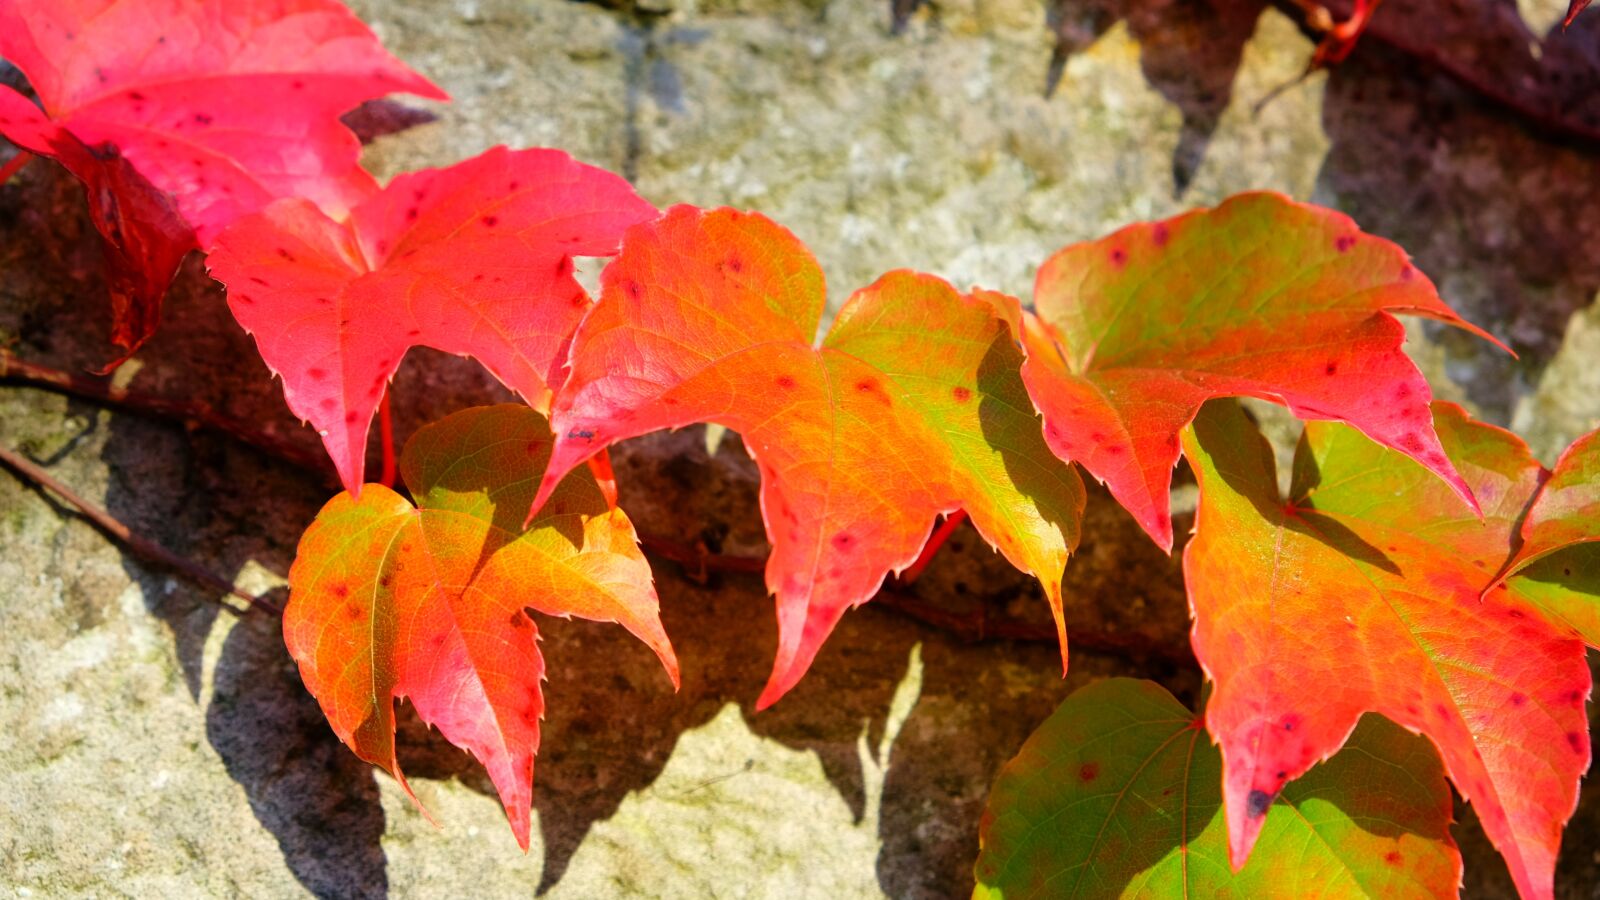 Fujifilm X-E2S sample photo. Autumn, fall foliage, fall photography